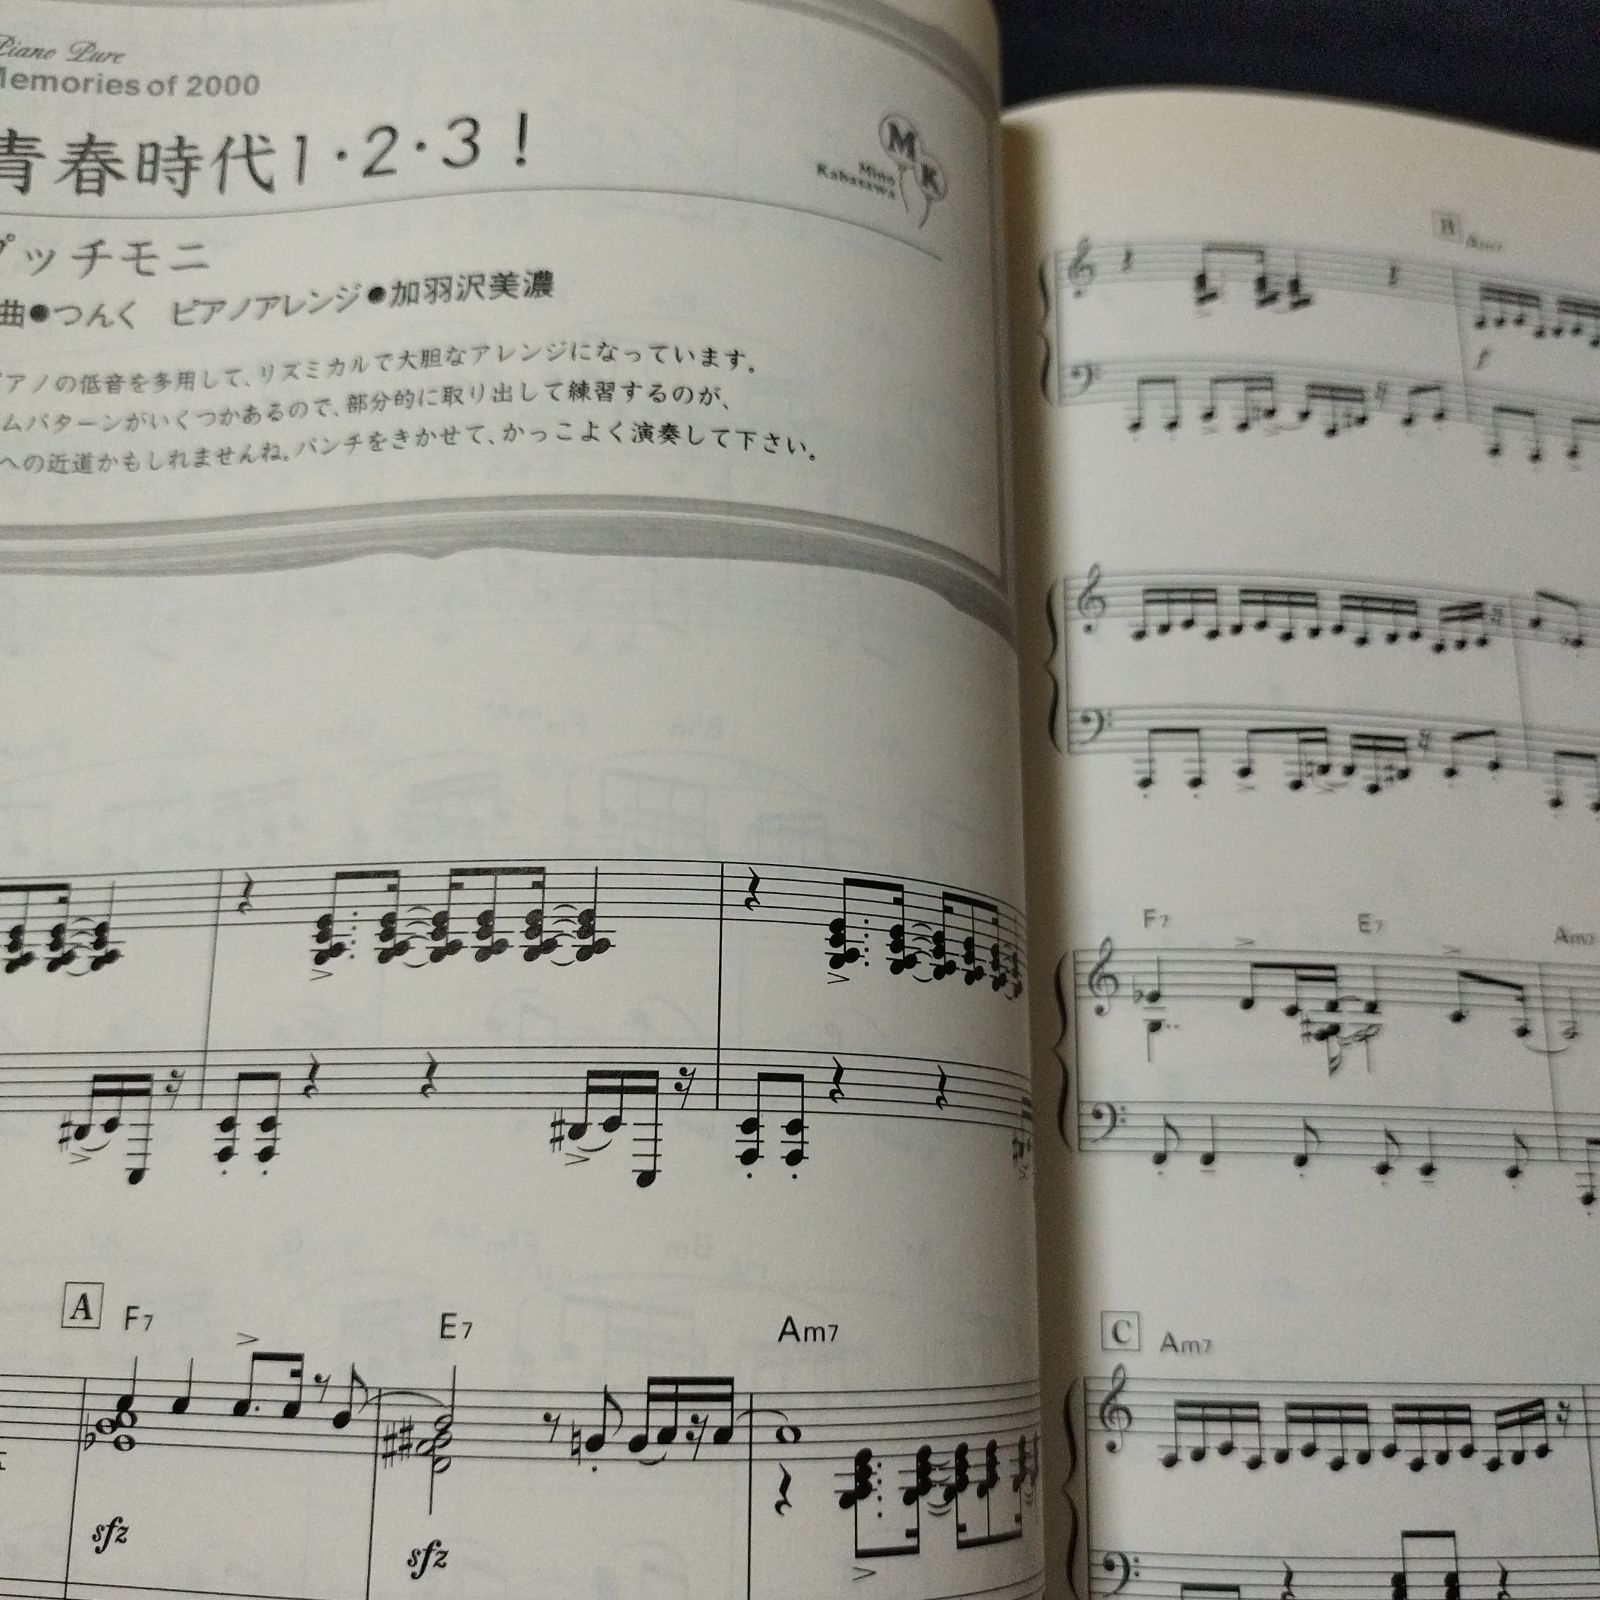 ピアノソロ 加羽沢美濃 ピアノ・ピュアメモリー・オブ・2000 2000年